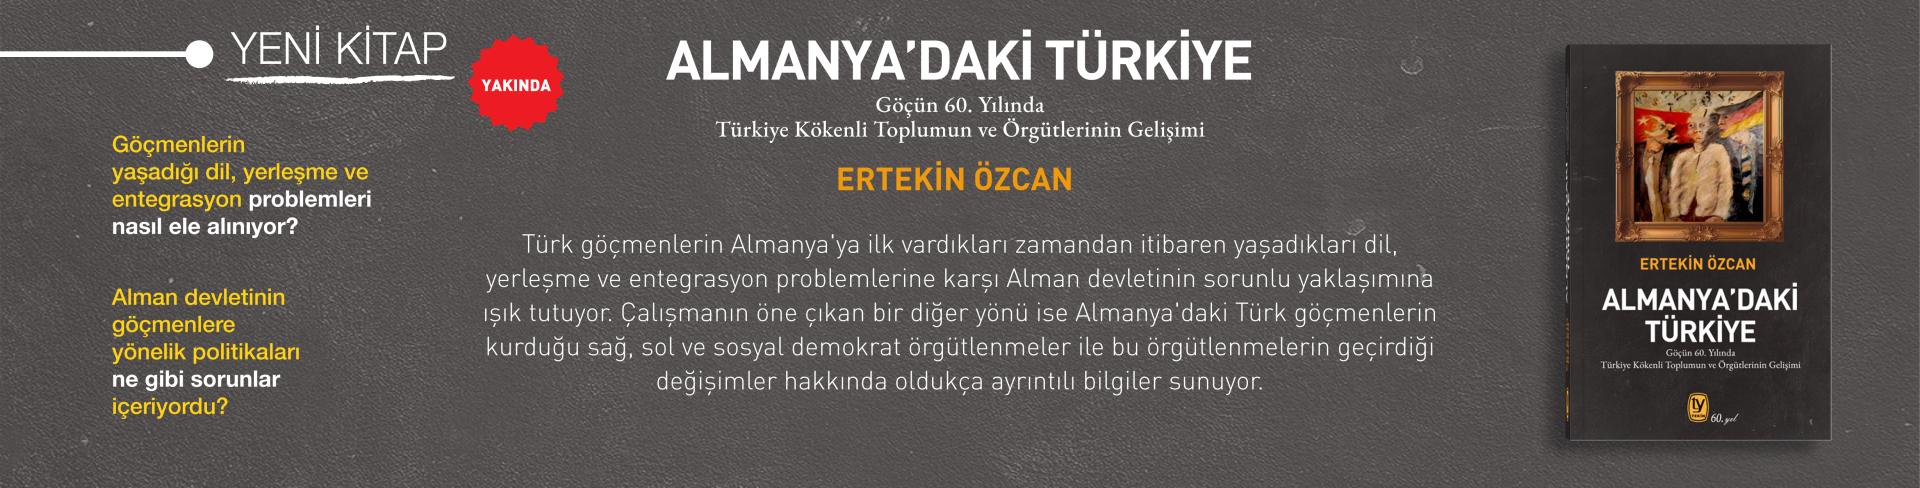 Almayadaki Türkiye